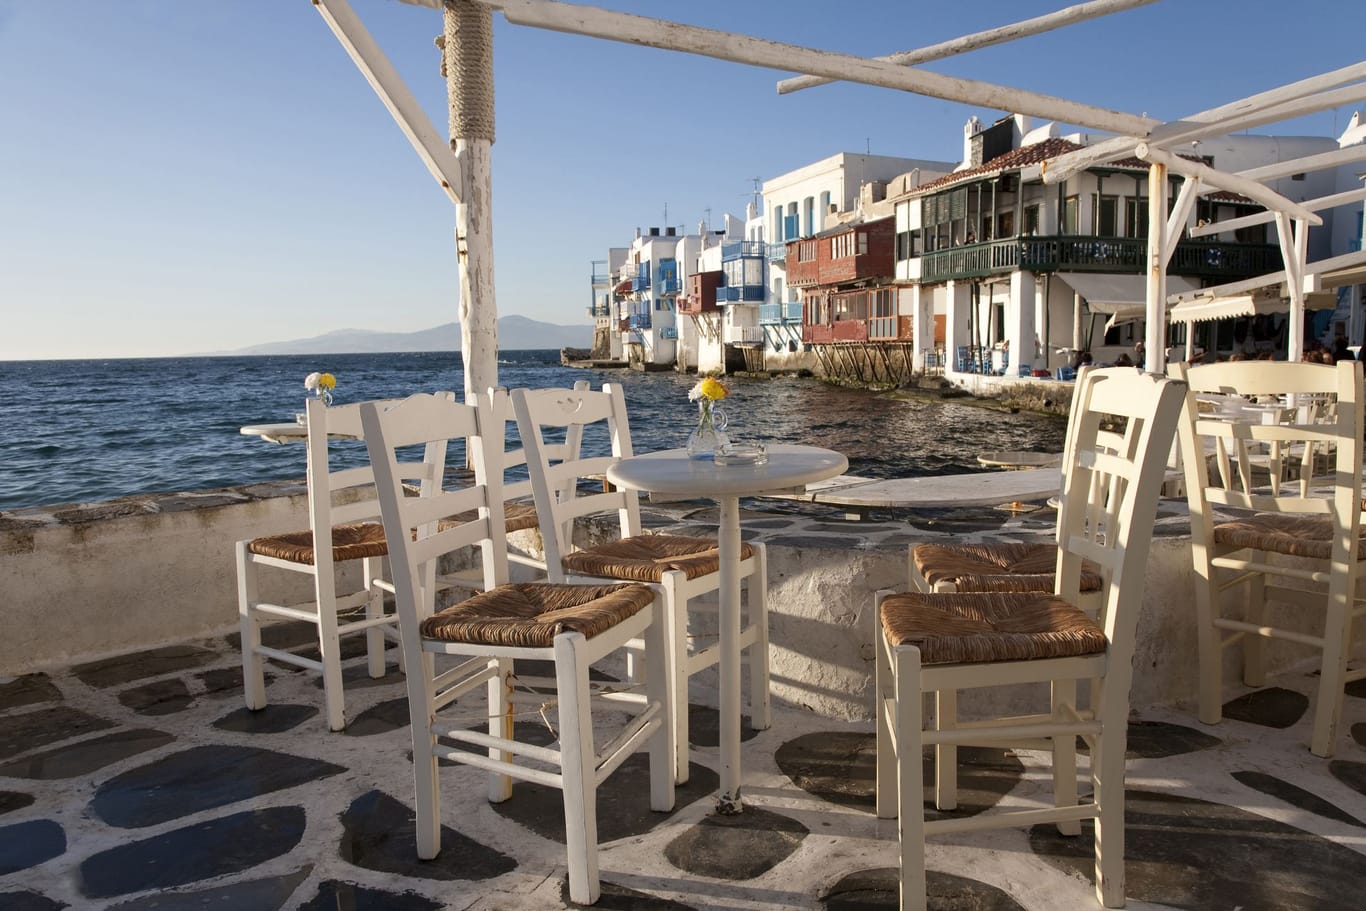 Die Bar "DK Oyster" am Strand von Platis Gialos auf Mykonos. Hier müssen Touristen tief in die Tasche greifen - einige sprechen von Betrug.